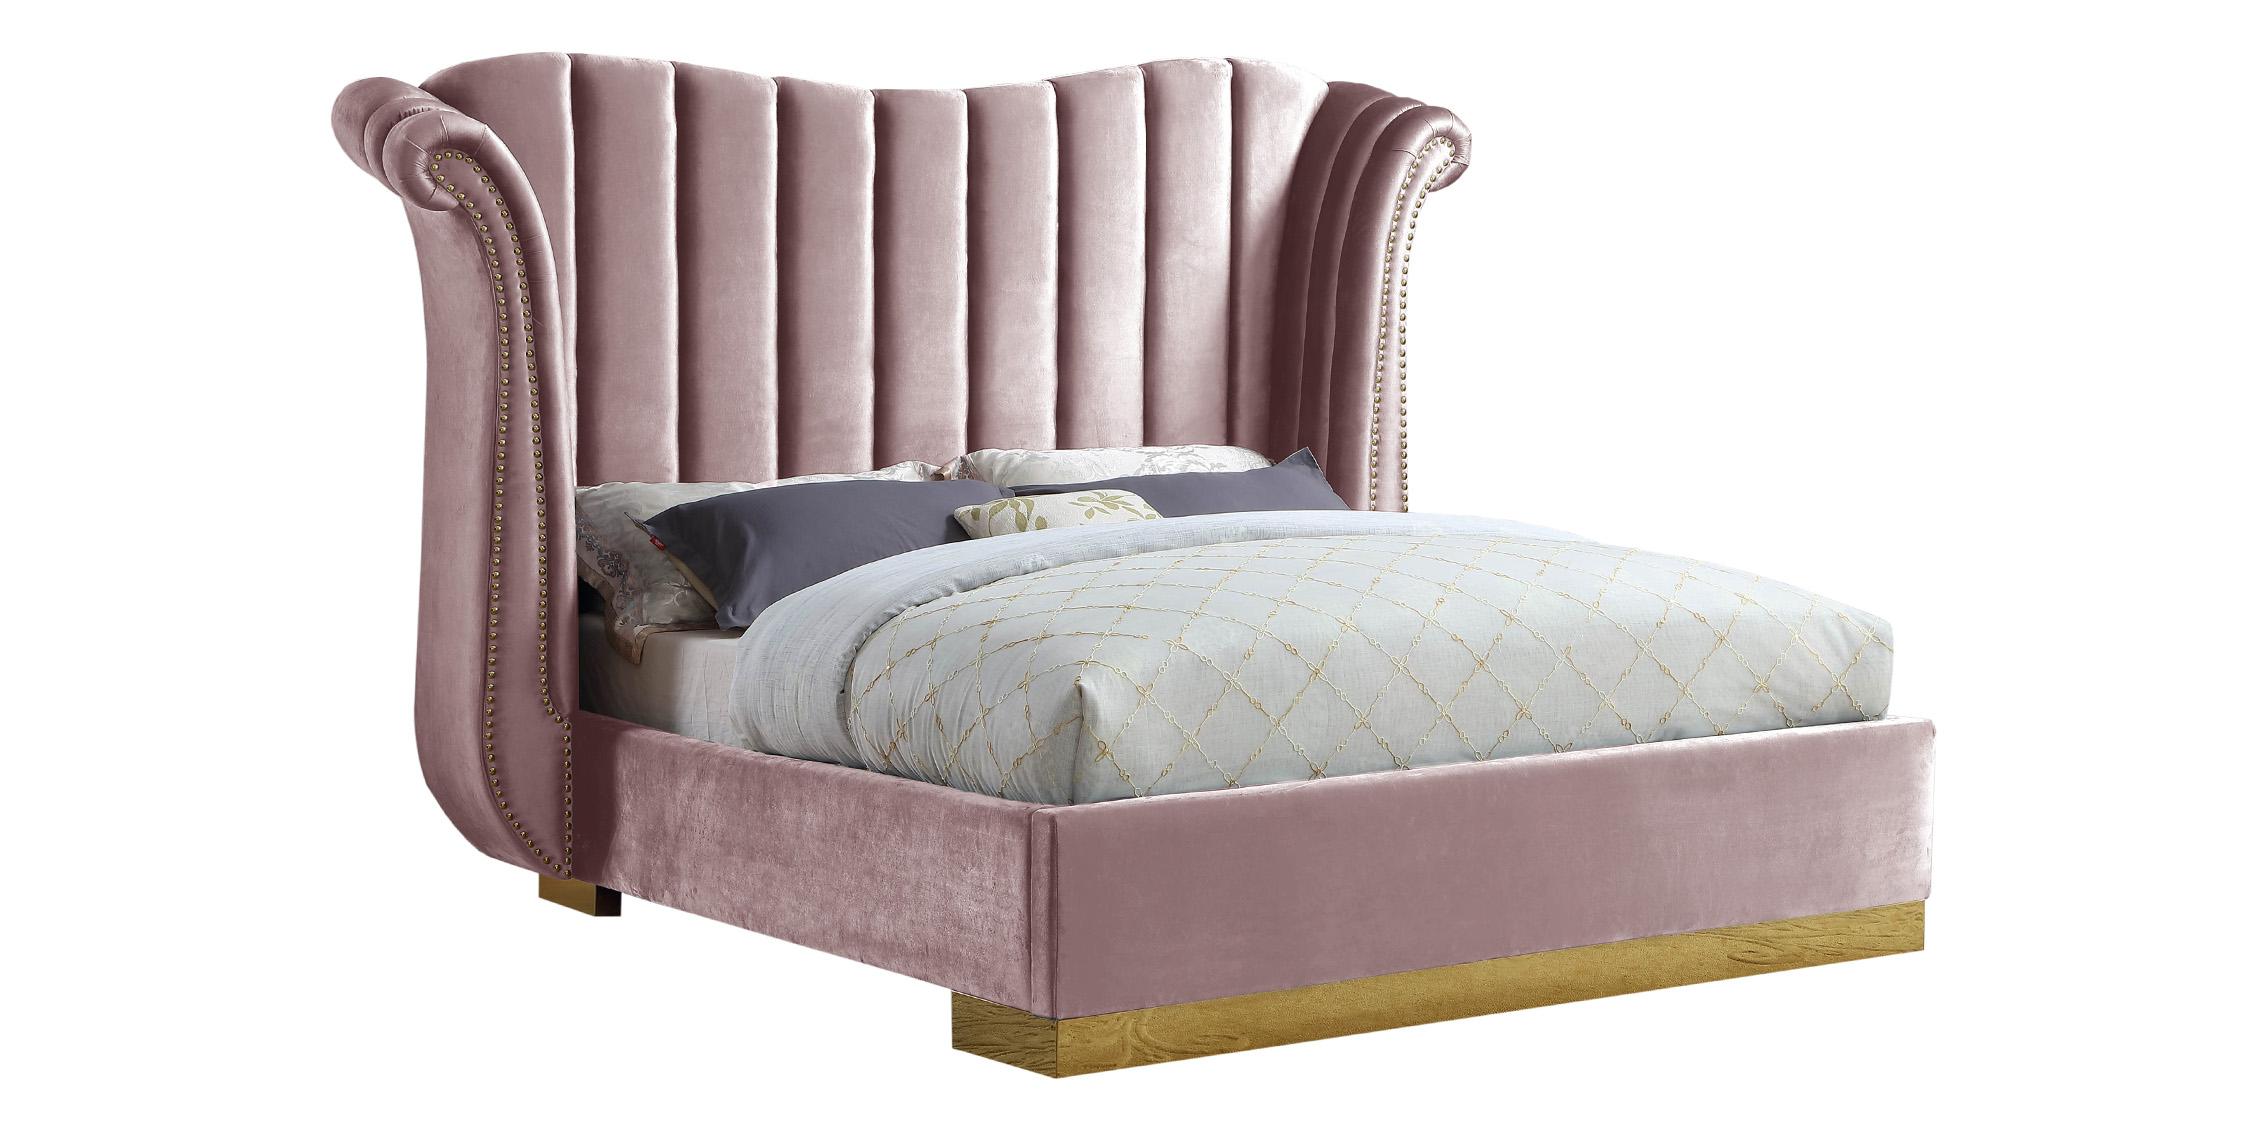 

    
Glam Pink Velvet & Gold King Bed FLORA FloraPink-K Meridian Contemporary Modern
